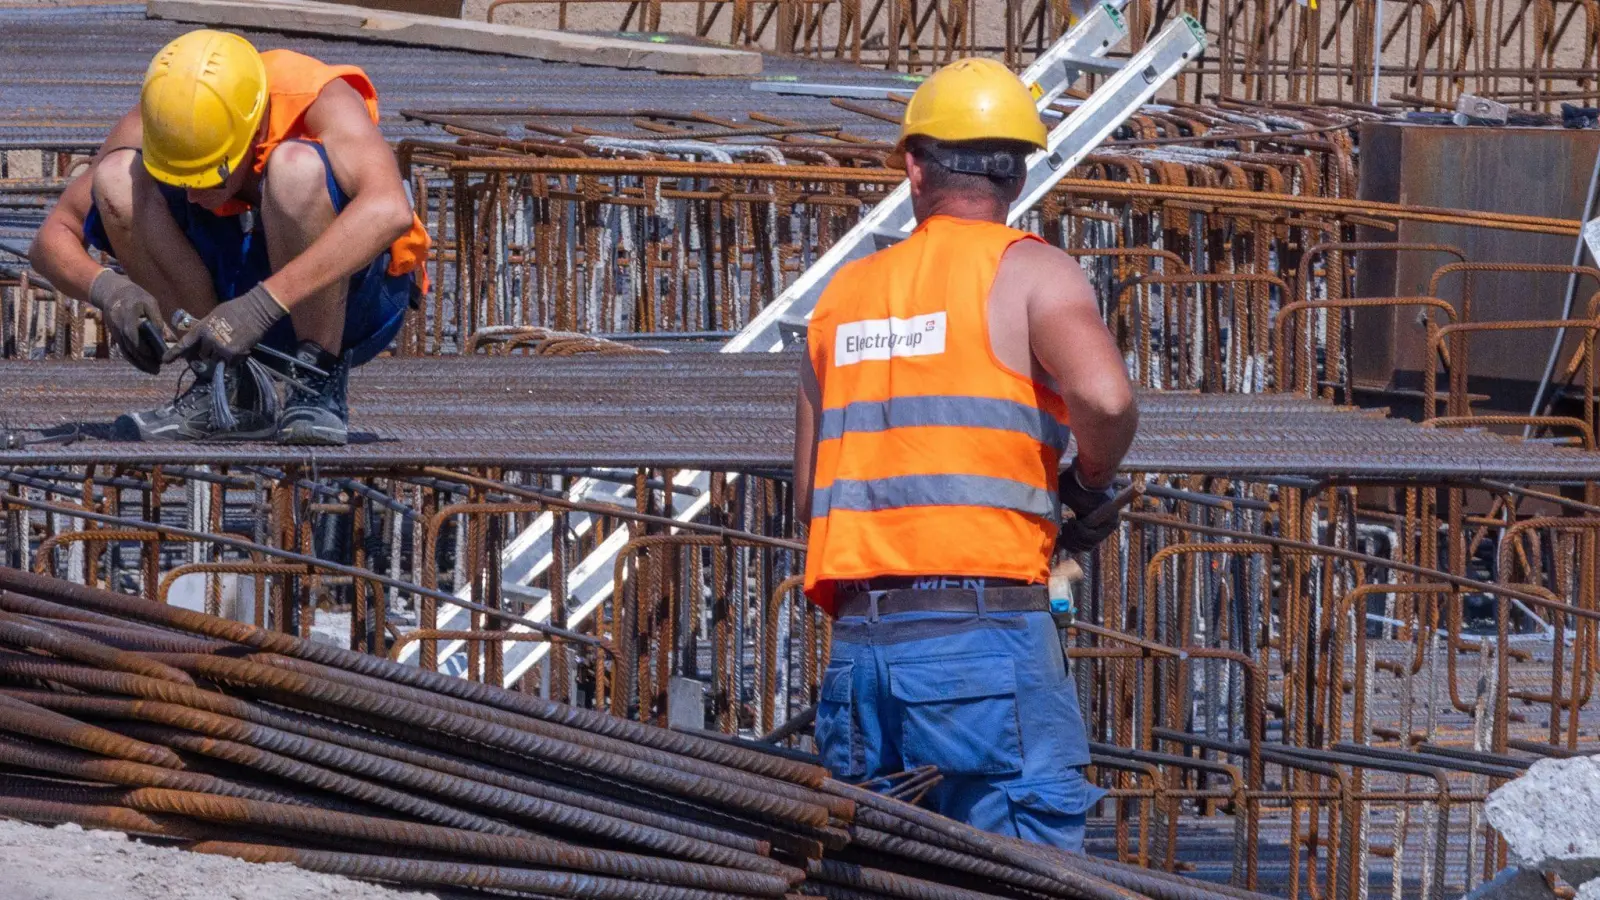 Bauarbeiter arbeiten an einem Fundament: Der Rückgang der durchschnittlichen Reallöhne fällt laut einer Studie in Deutschland etwas stärker aus als im gesamten OECD-Raum. (Foto: Jens Büttner/dpa)